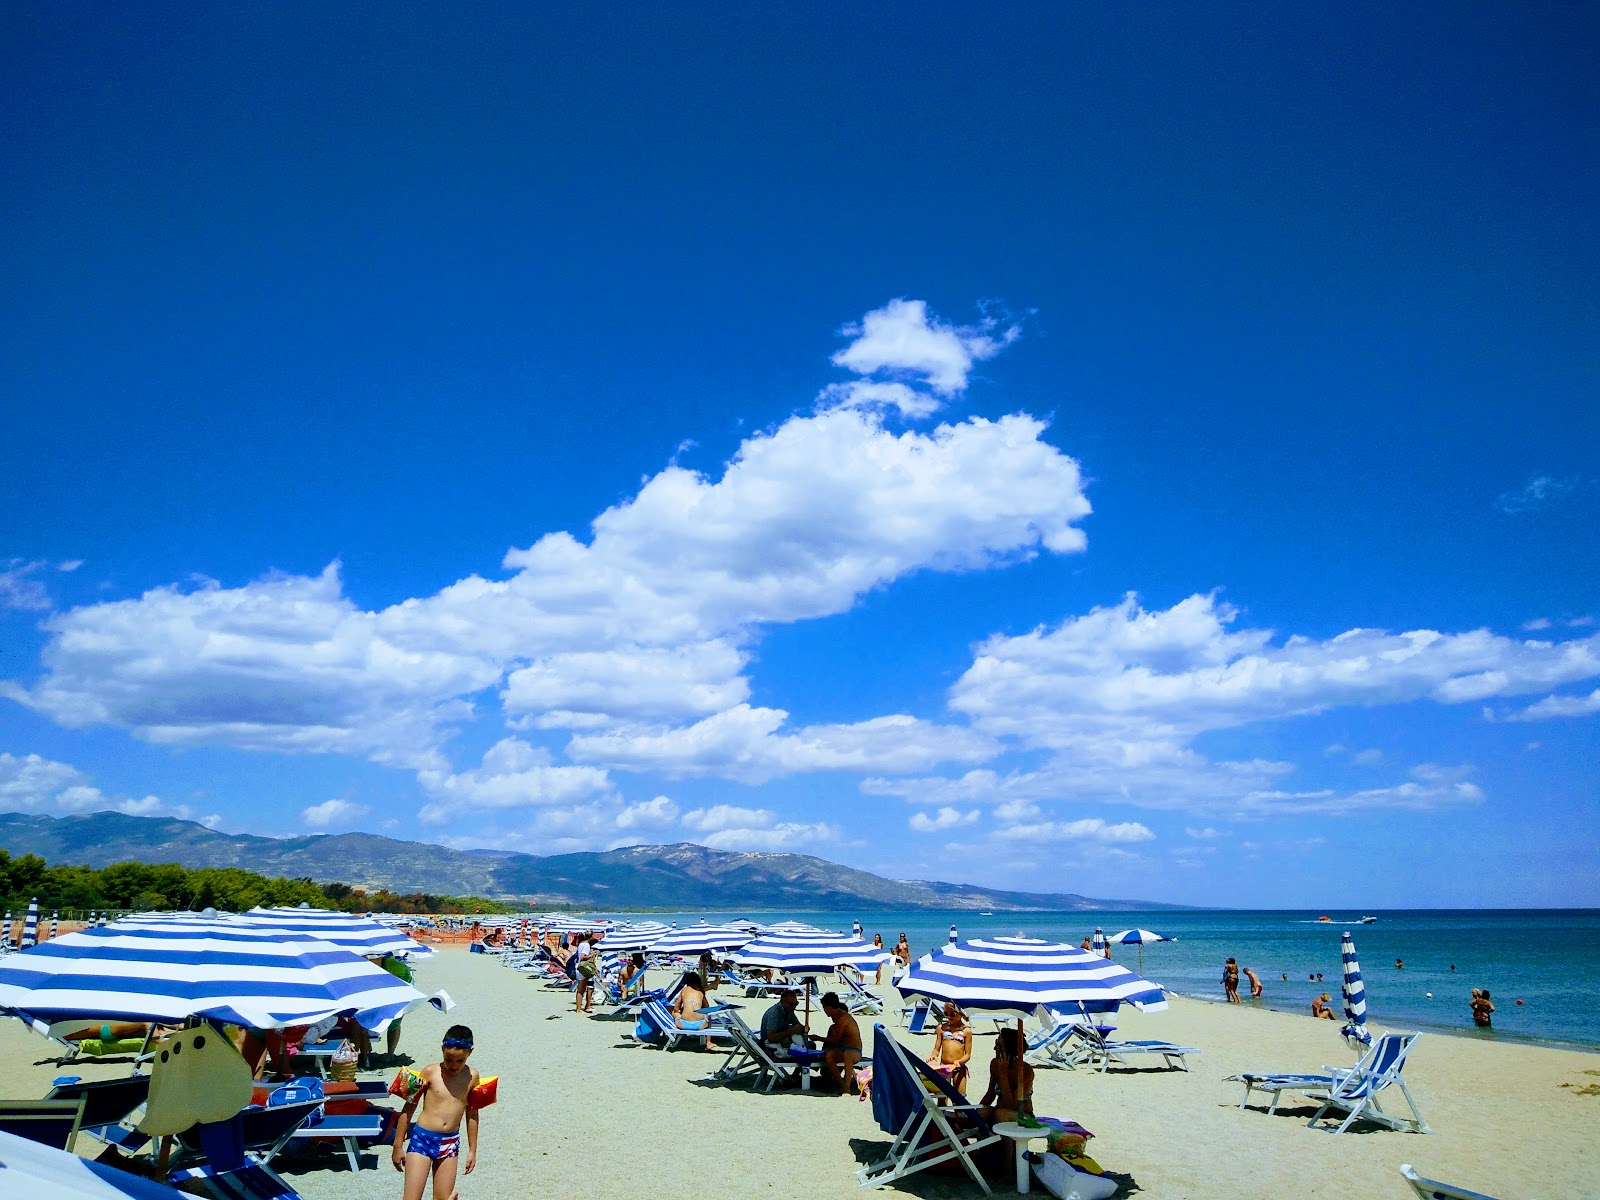 Photo de Bruscata Grande beach - endroit populaire parmi les connaisseurs de la détente